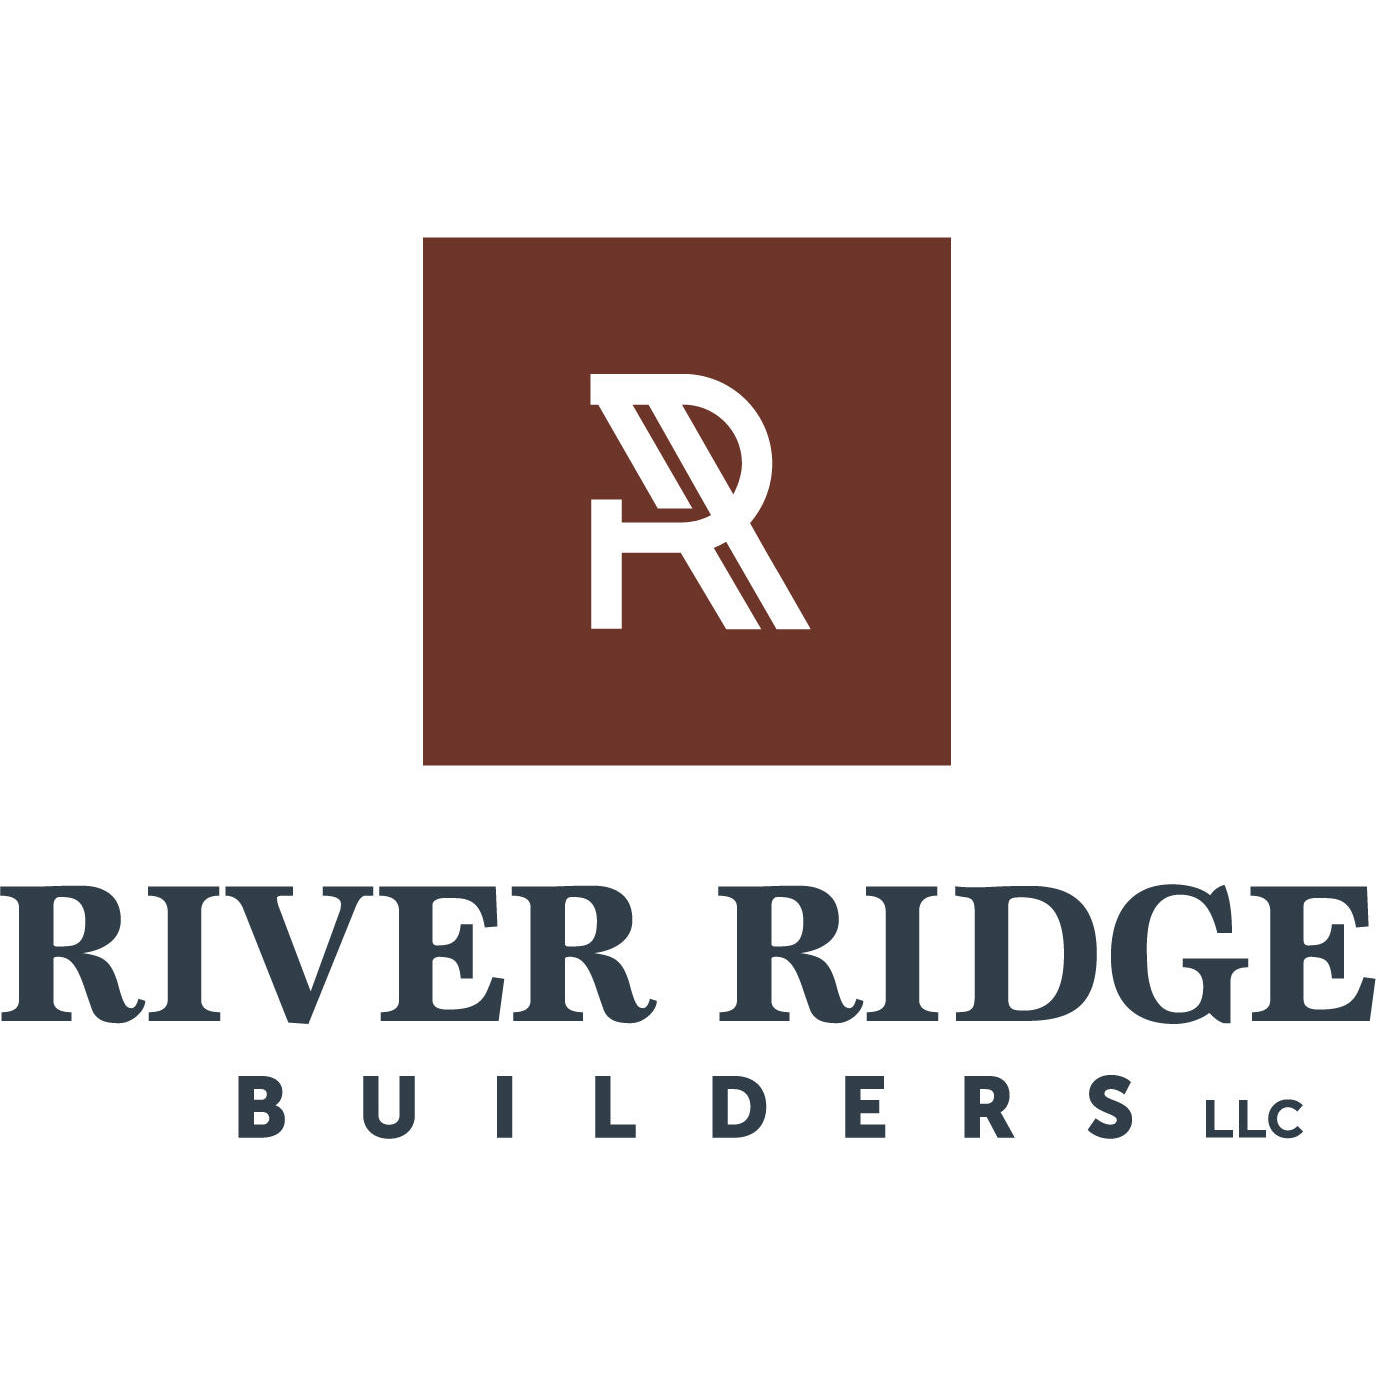 River Ridge Builders, LLC - River Falls, WI - (715)256-8833 | ShowMeLocal.com